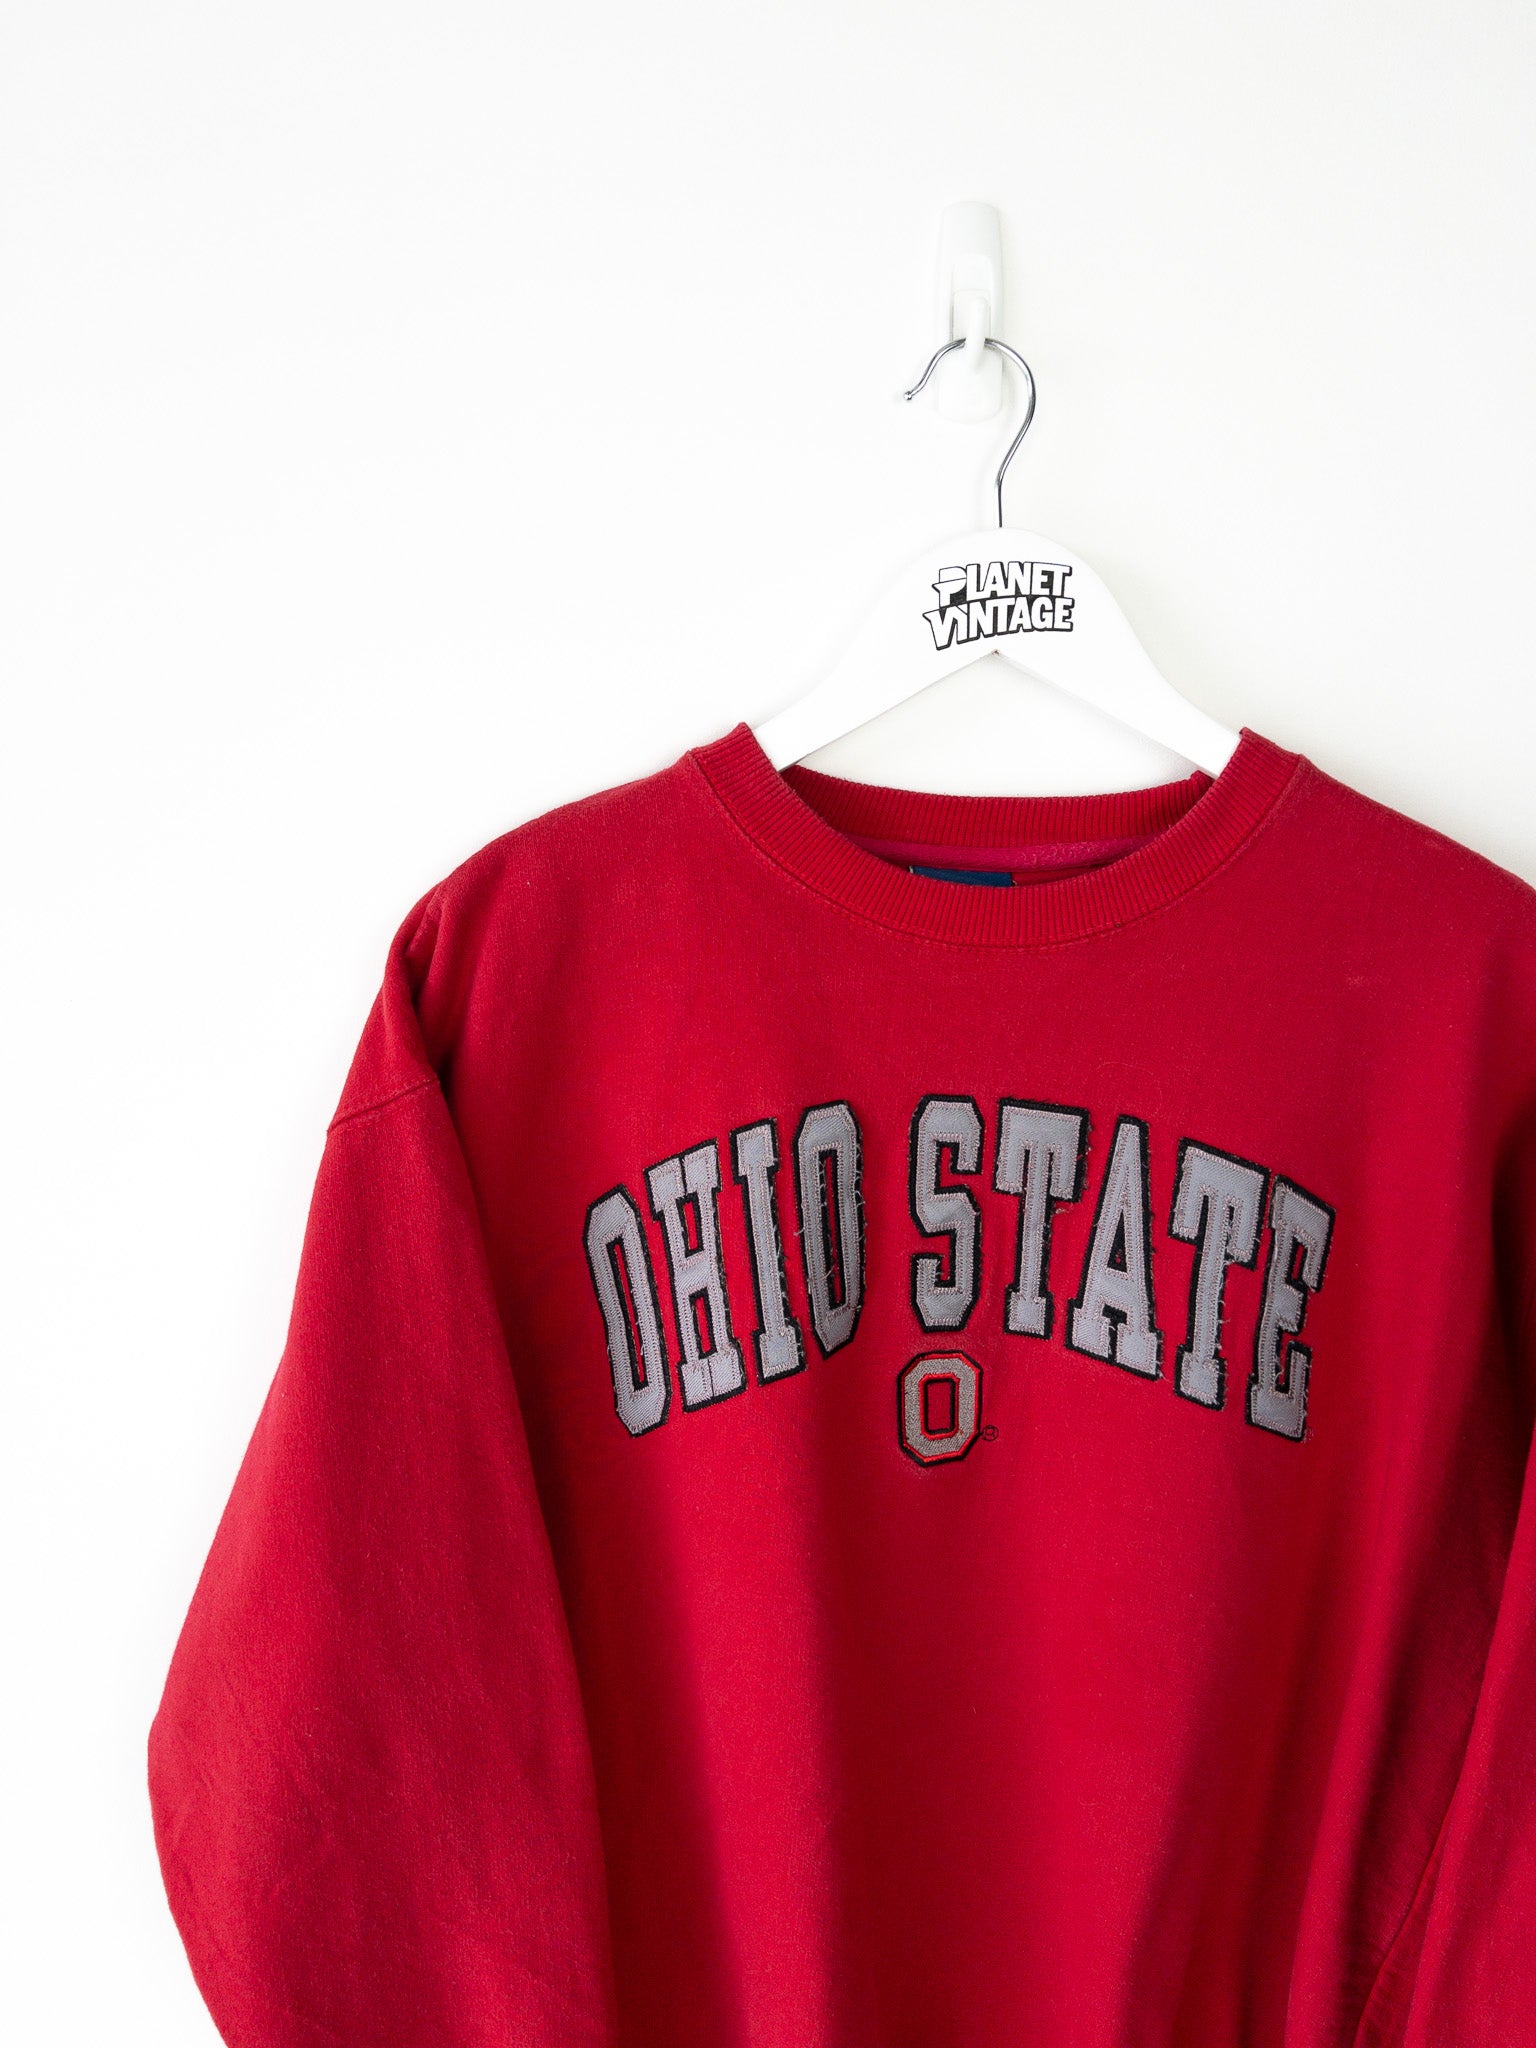 Vintage Ohio State University Sweatshirt (M)